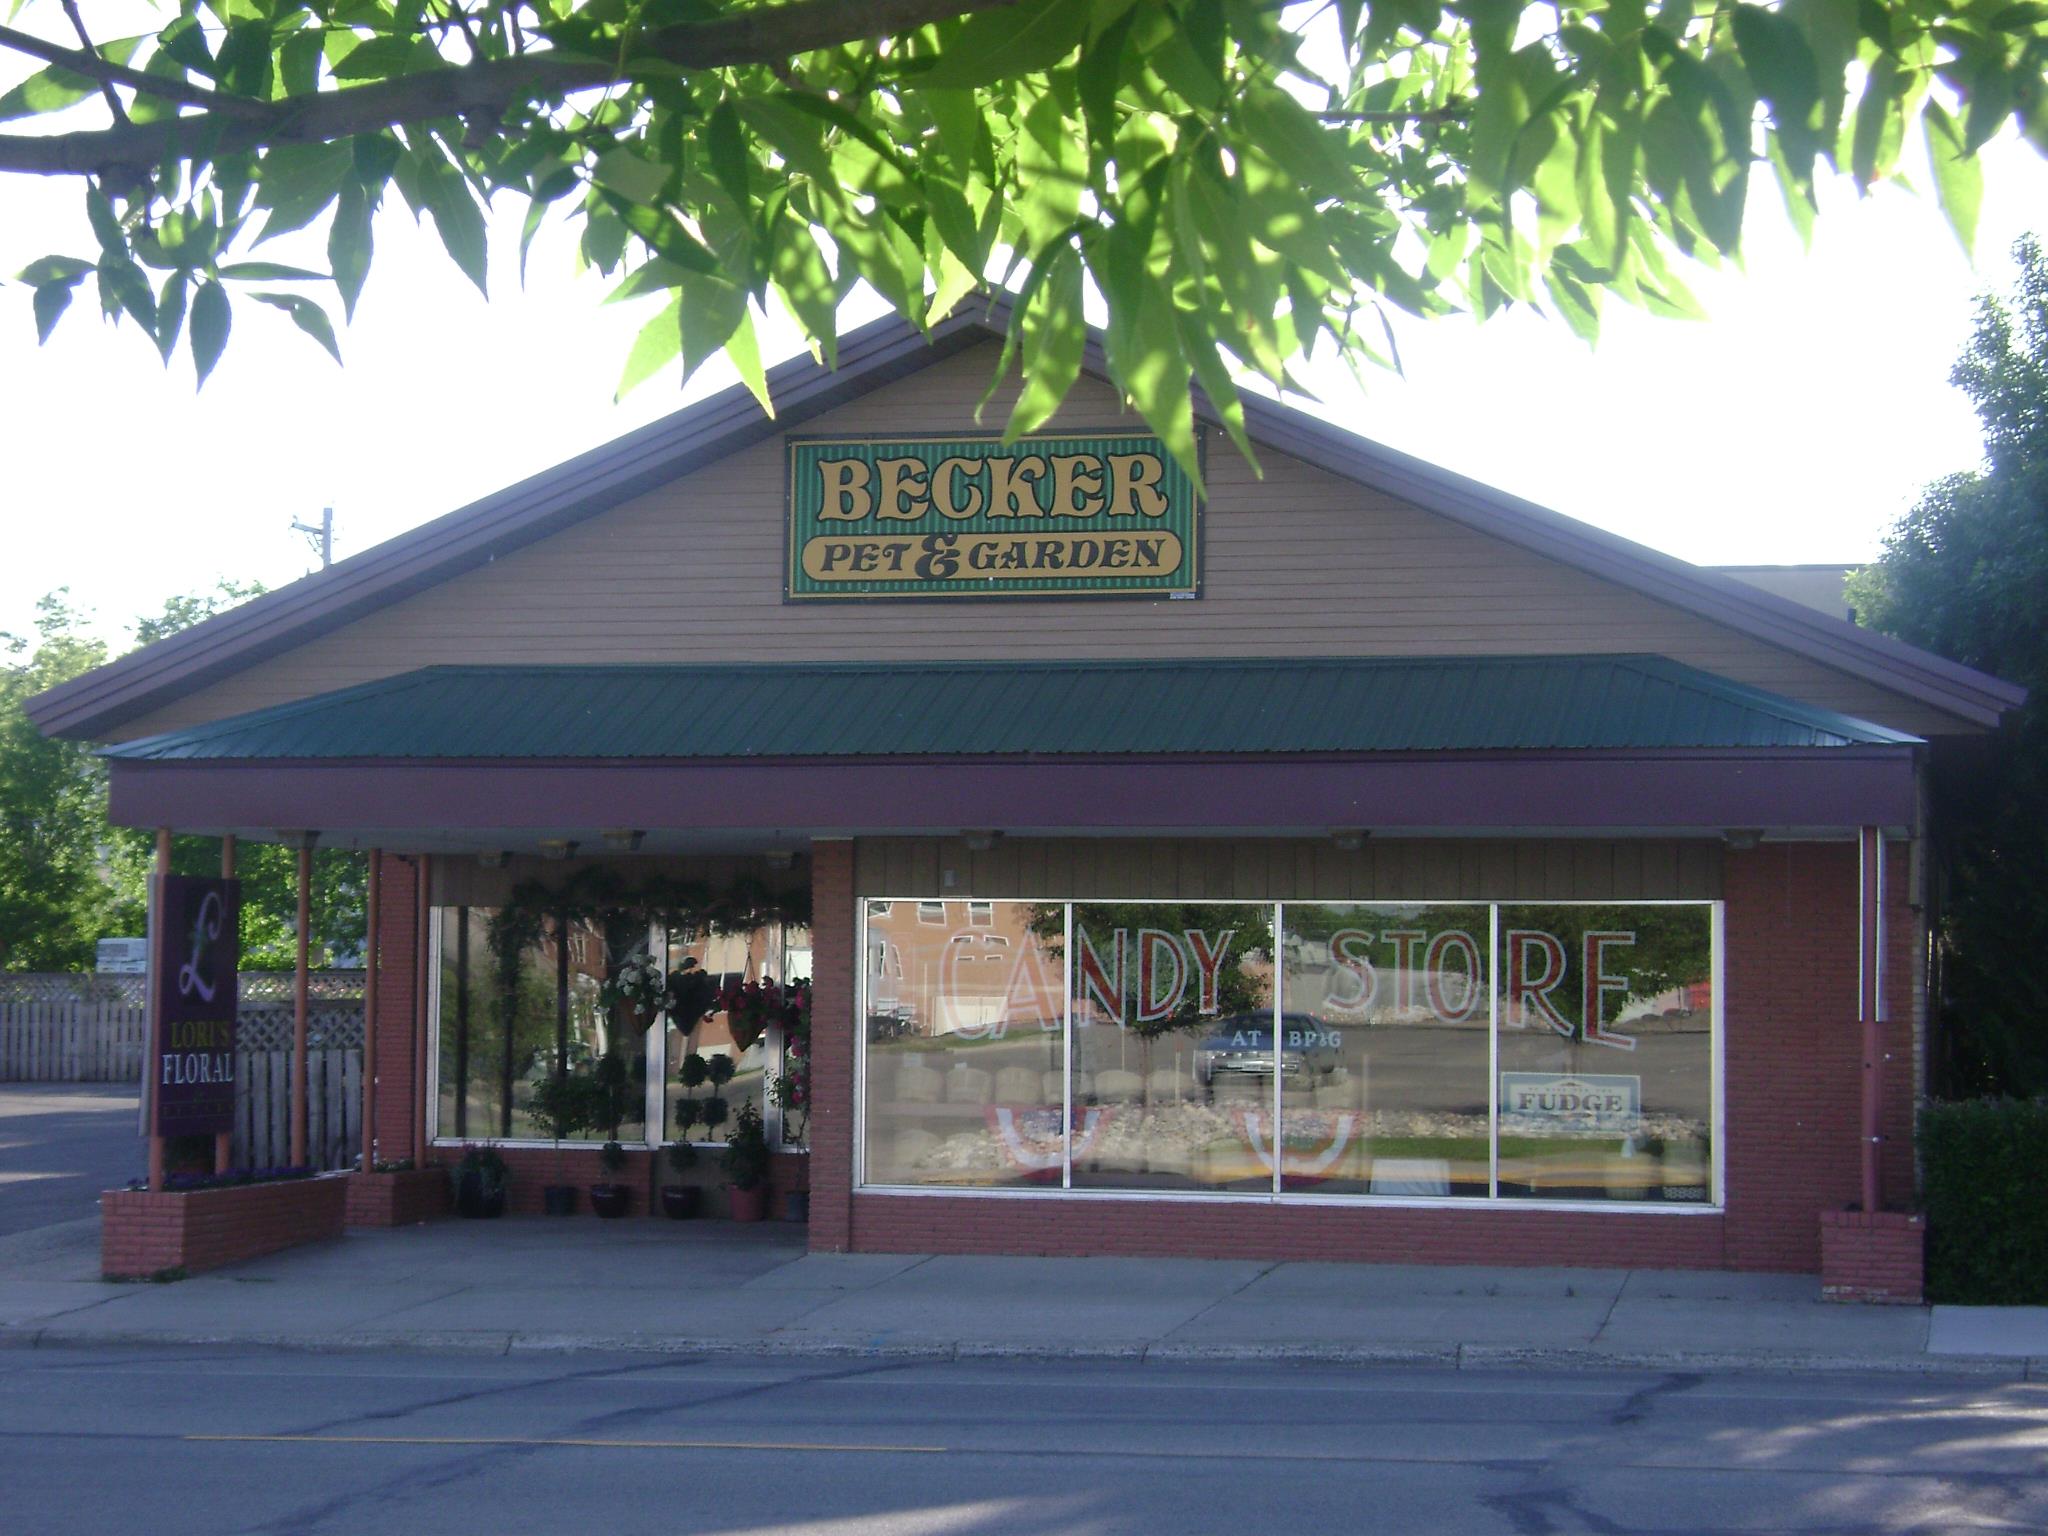 Becker Pet & Garden